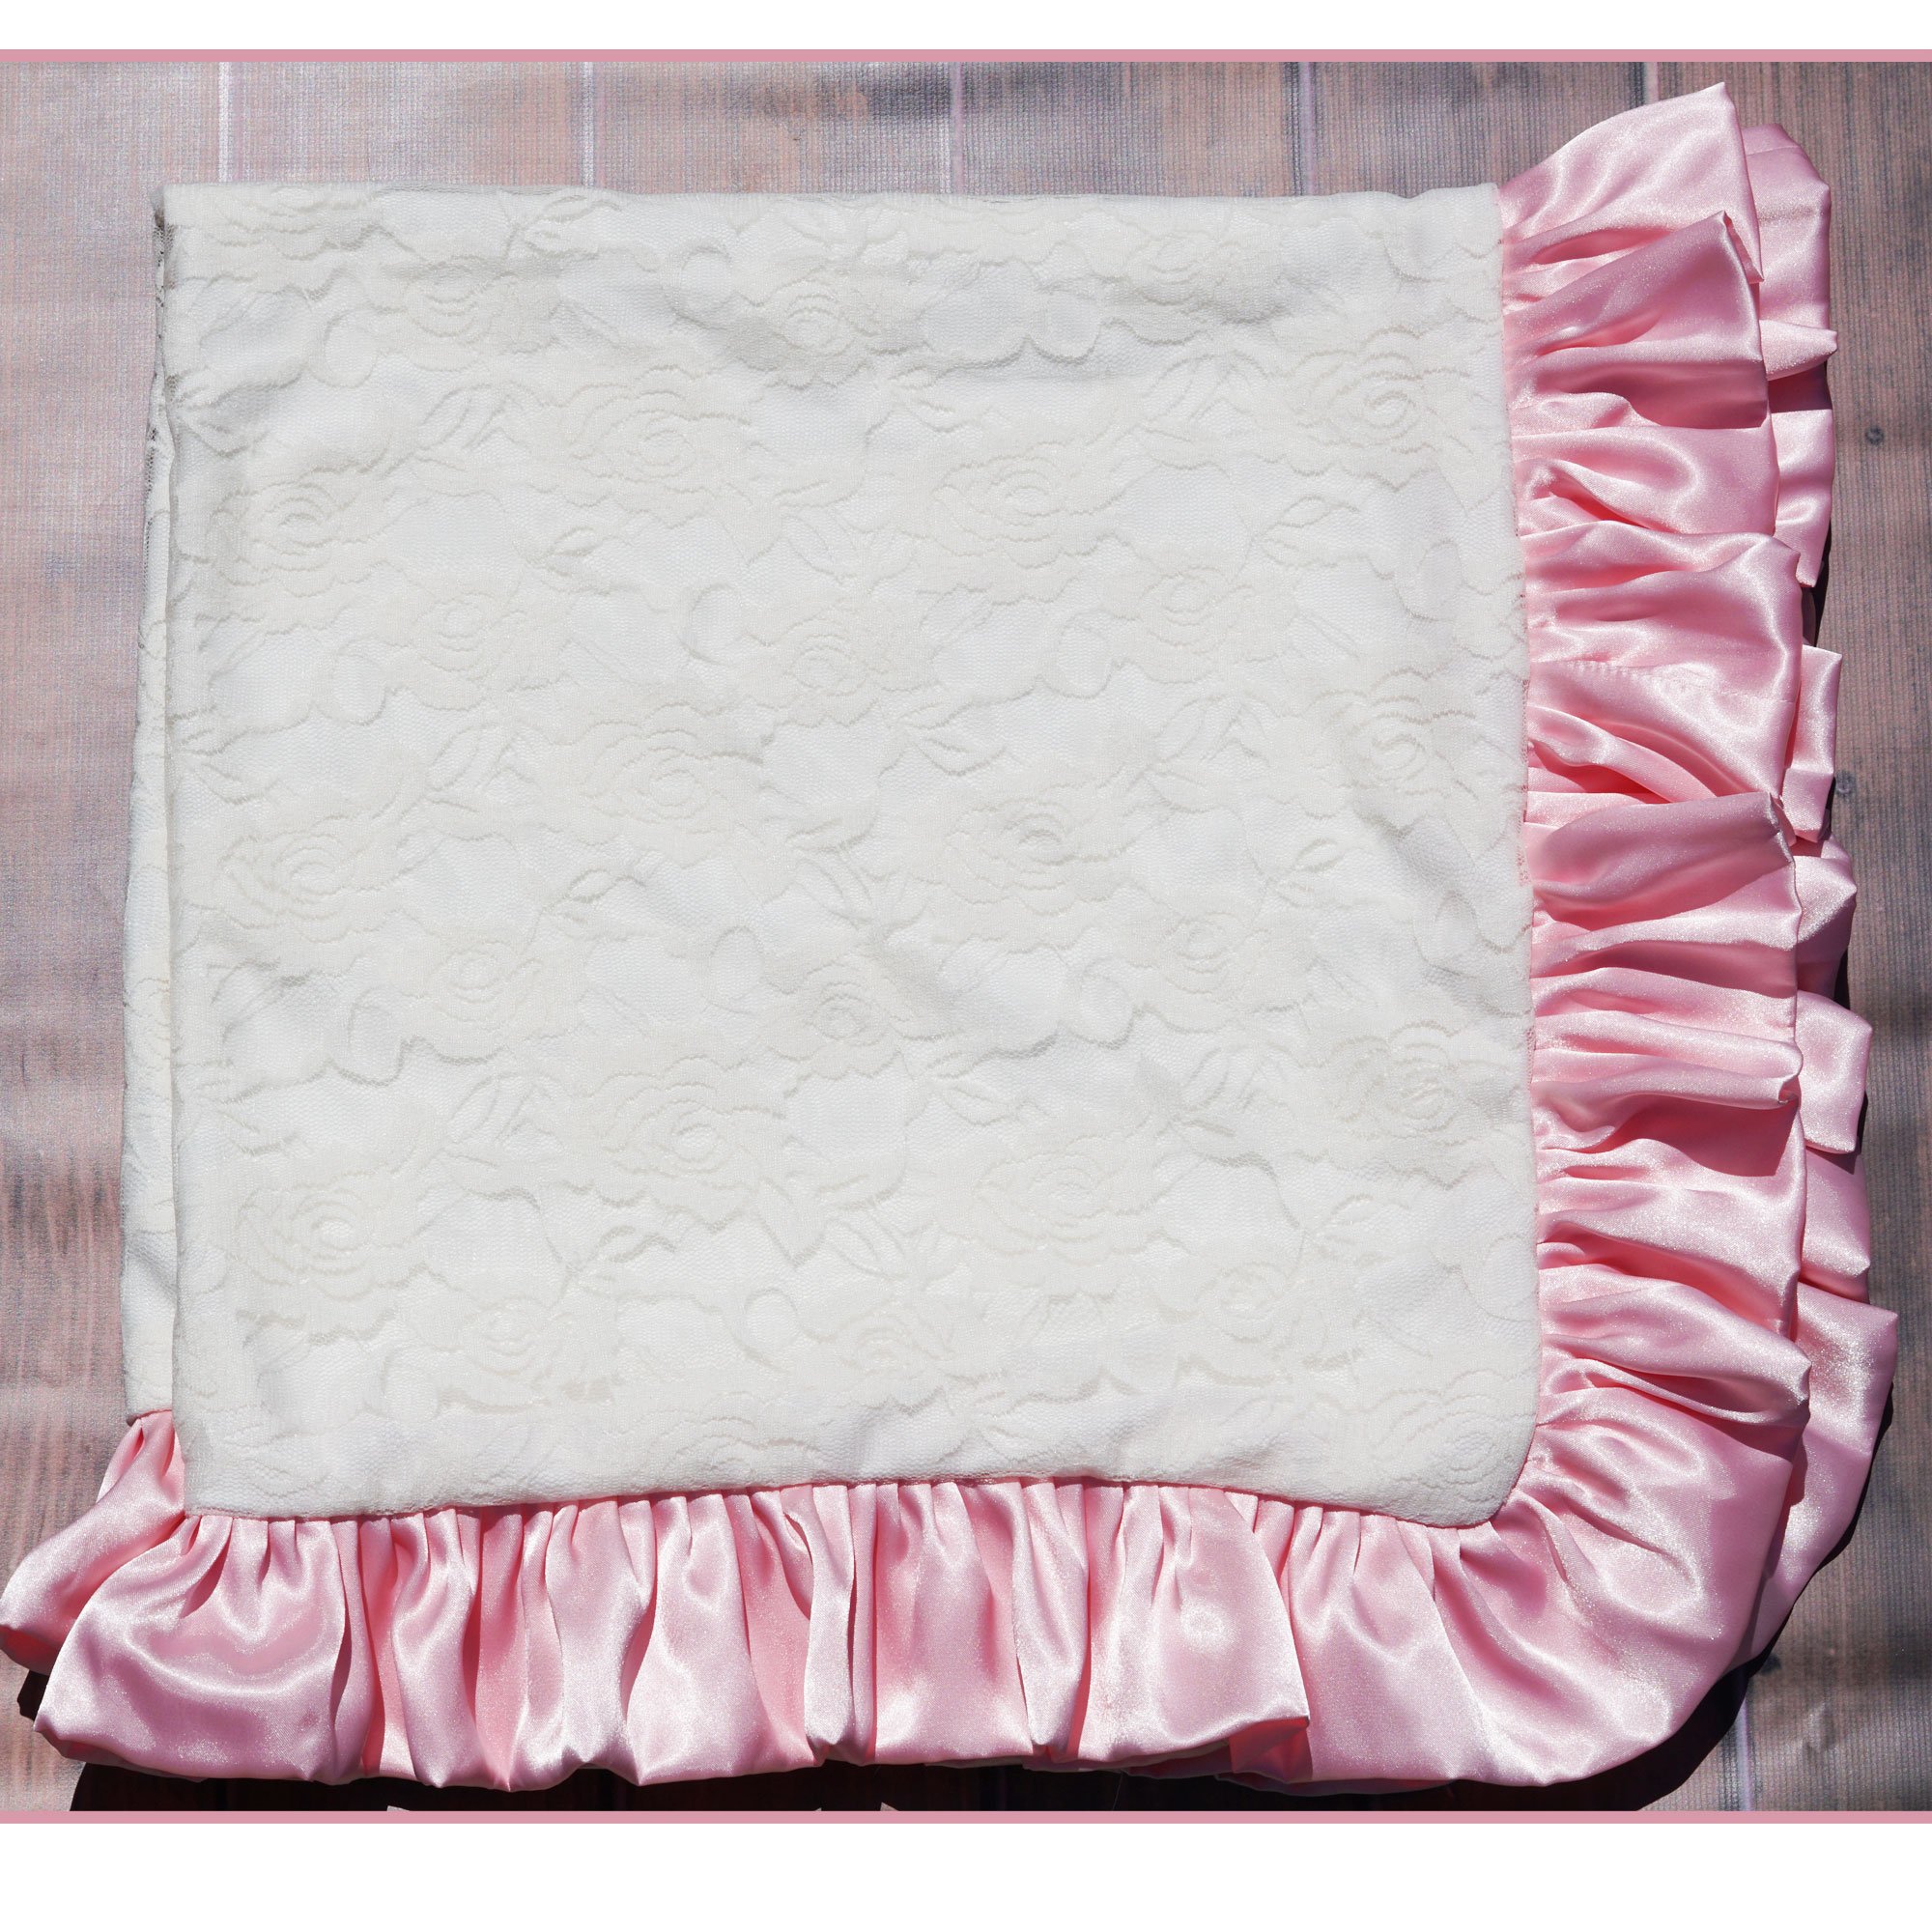 vintage pale pink satin trimmed felt baby blanket  swan appliqu\u00e9  scroll edging  baby girl gift